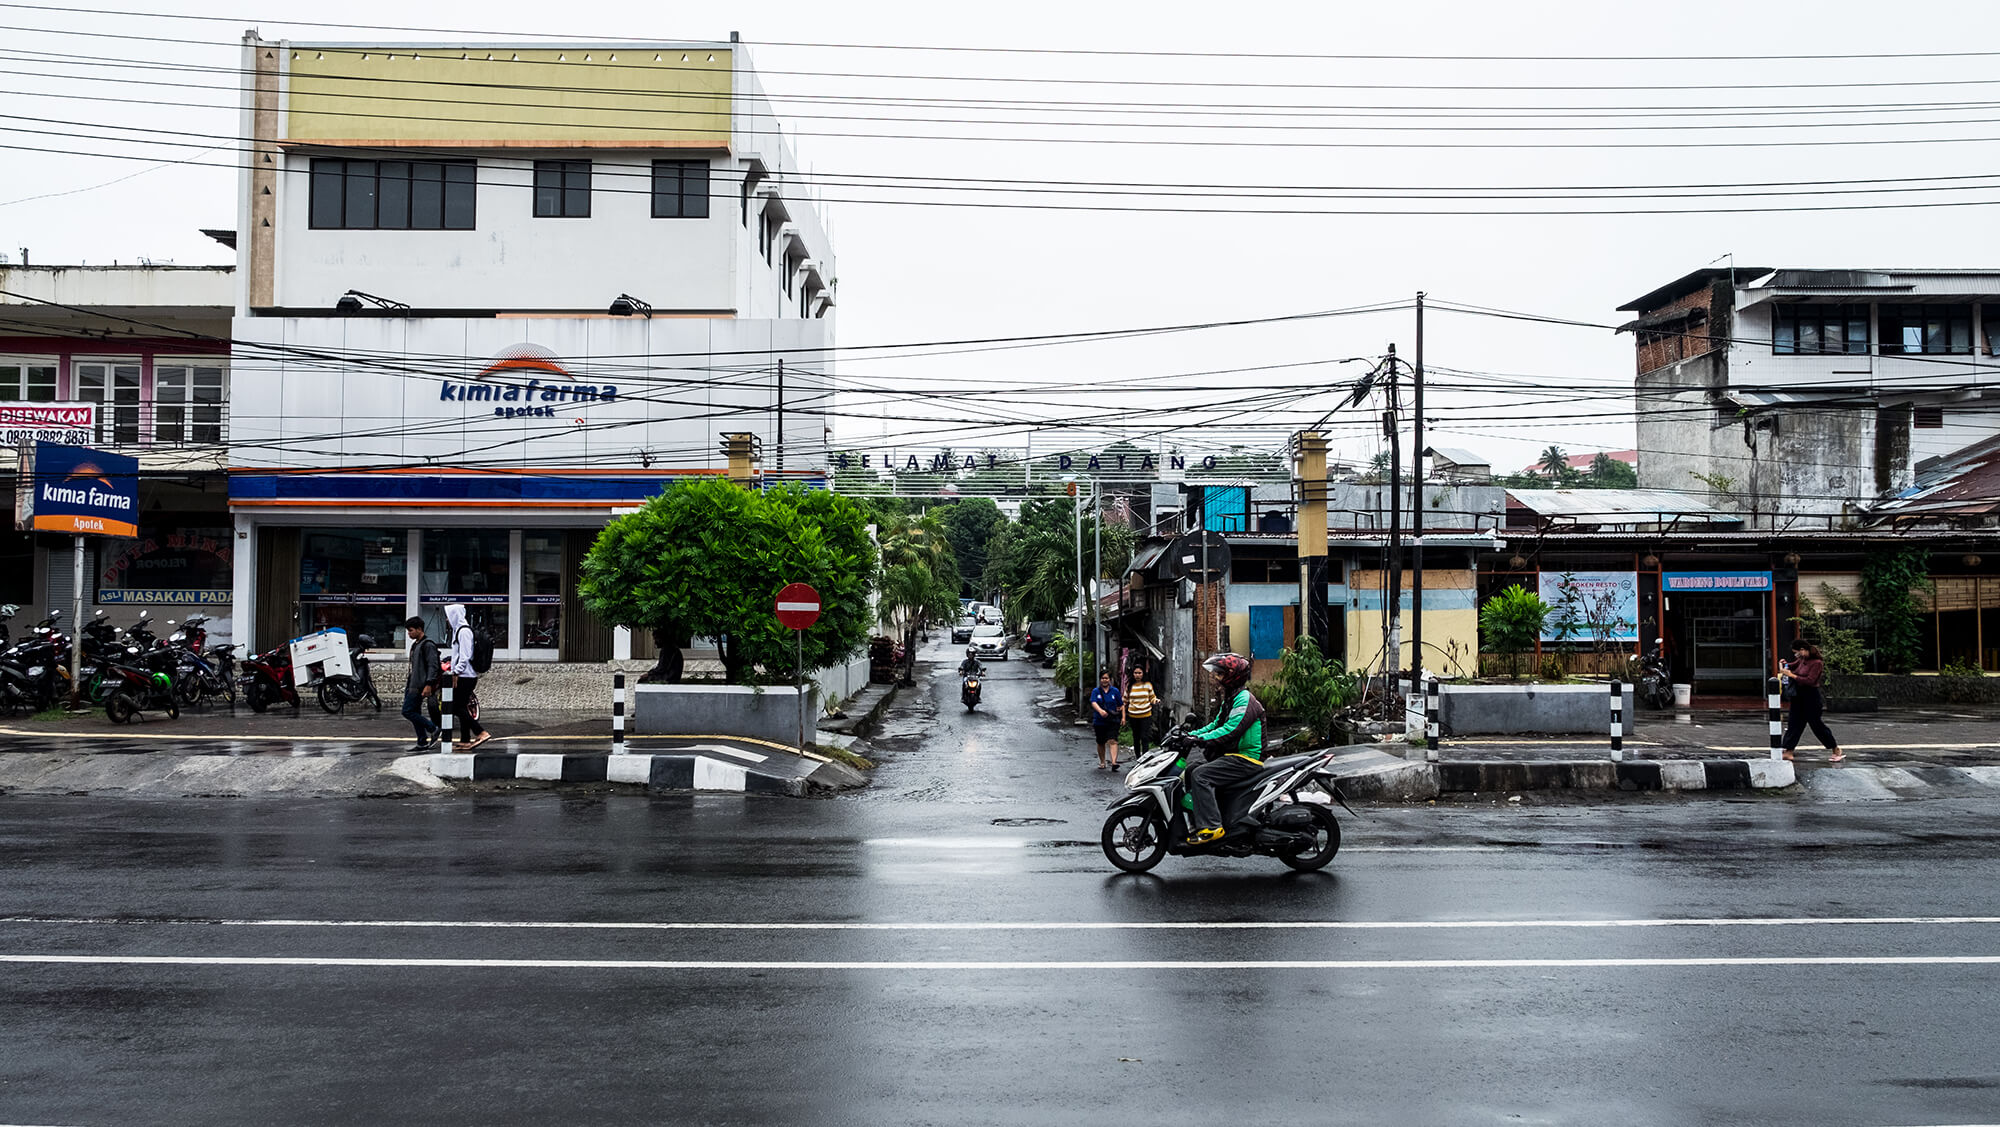 Tráfico en la ciudad de Manado en Sulawesi